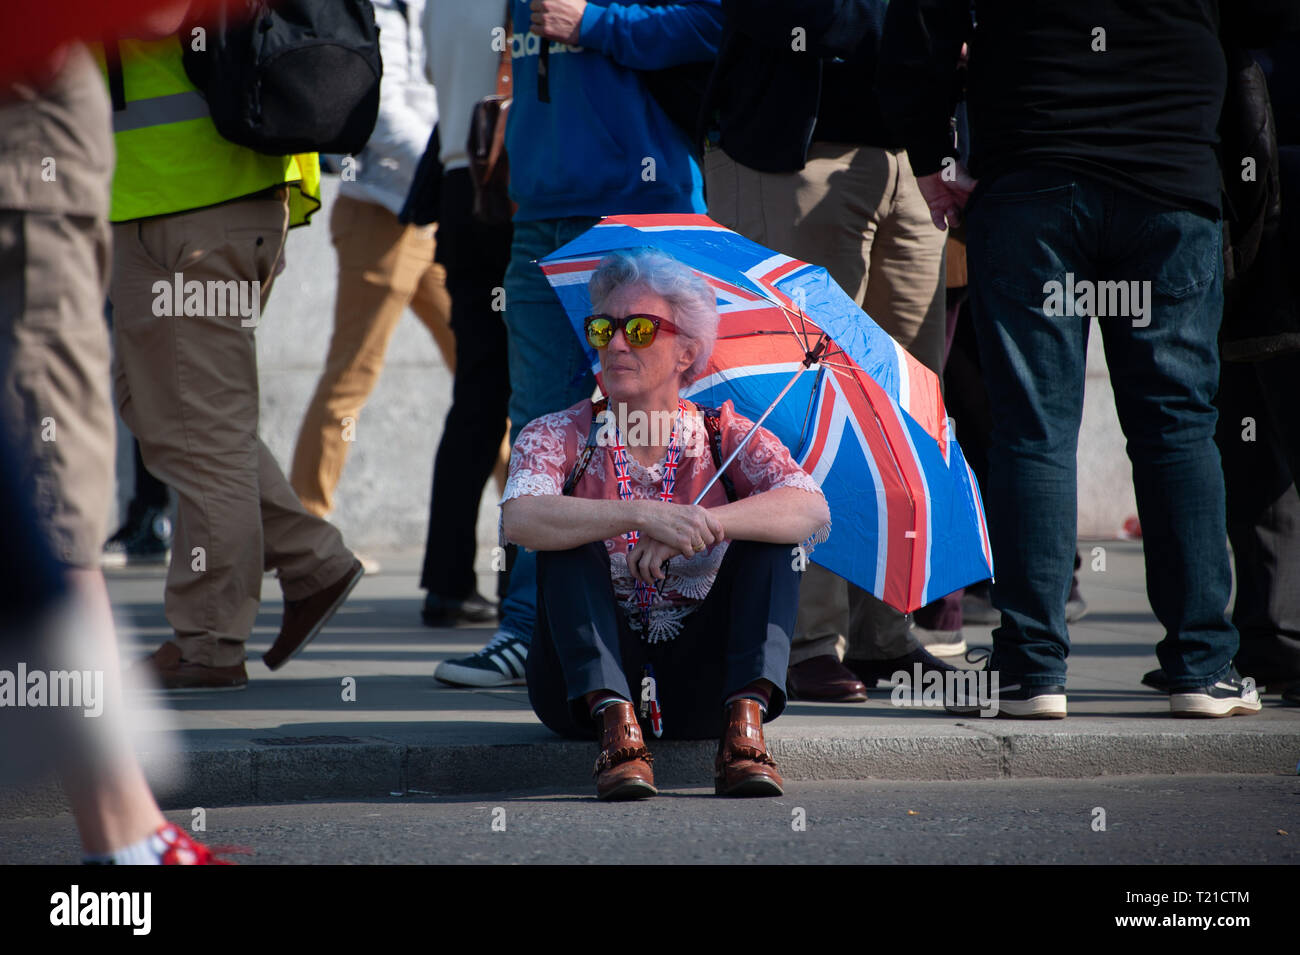 Londra, Regno Unito. 29 Mar, 2019. Sostenitore Pro-Leave frequentando un rally in piazza del Parlamento. Credito: Sandip Savasadia/Alamy Live News Foto Stock